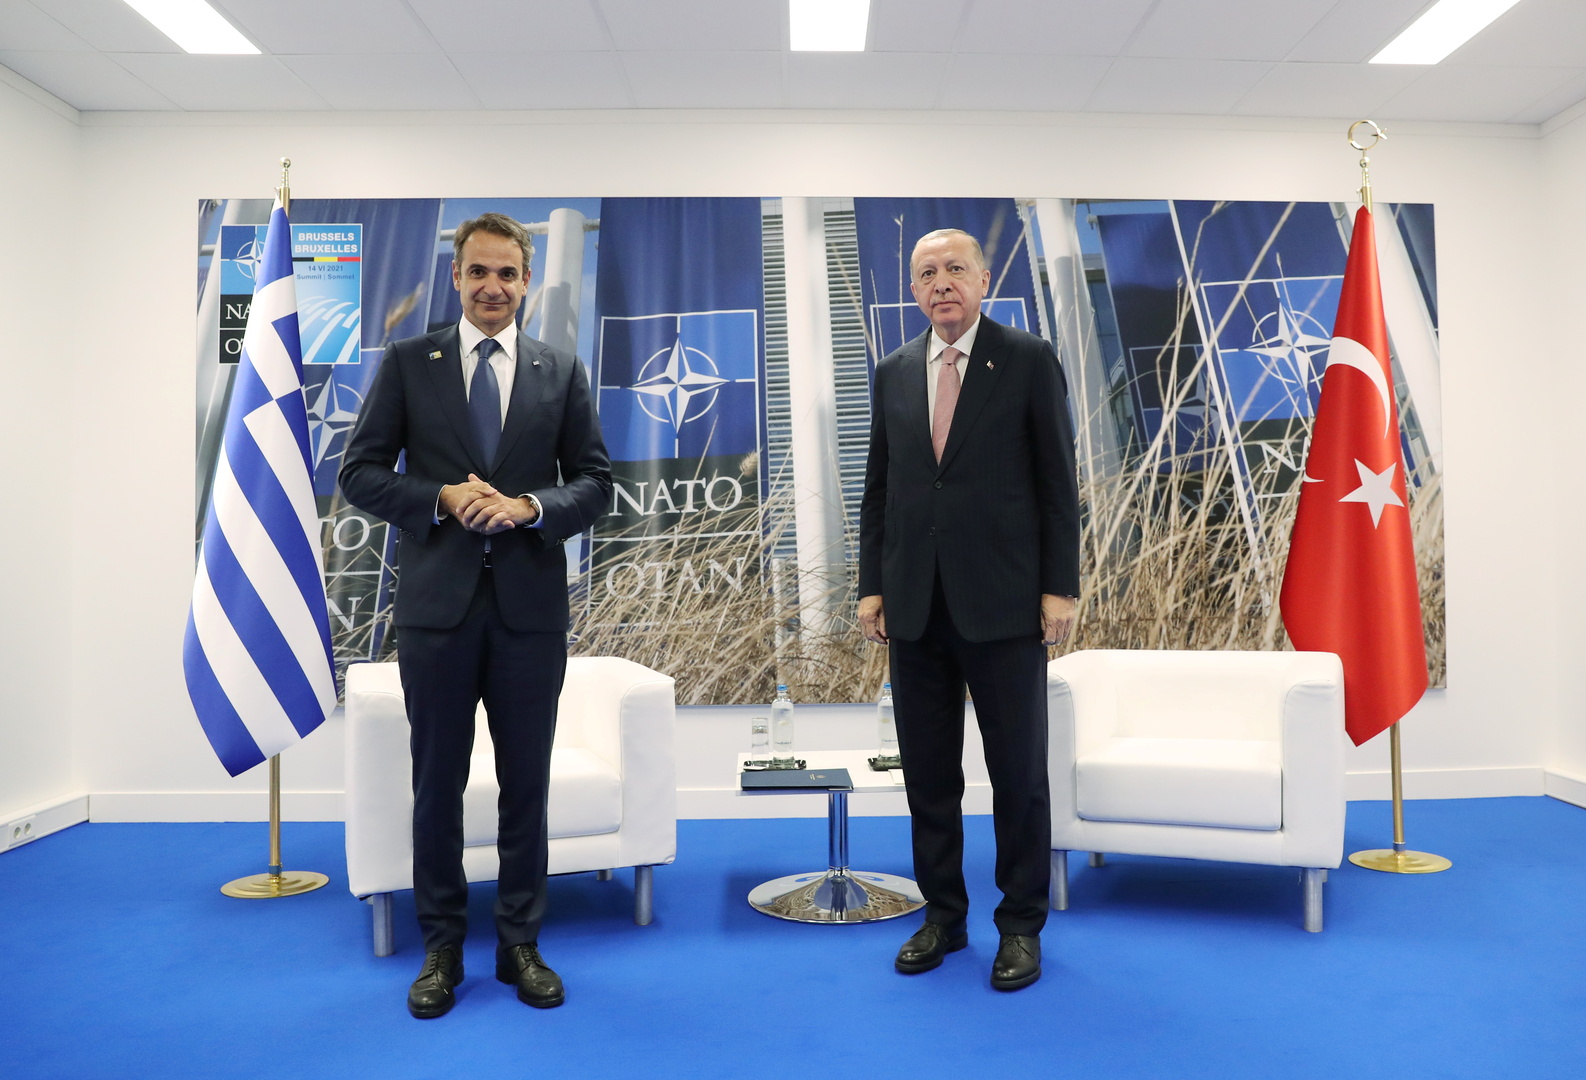 مصادر: زعيما تركيا واليونان يتوصلان إلى تفاهم لمنع تكرار توتر 2020